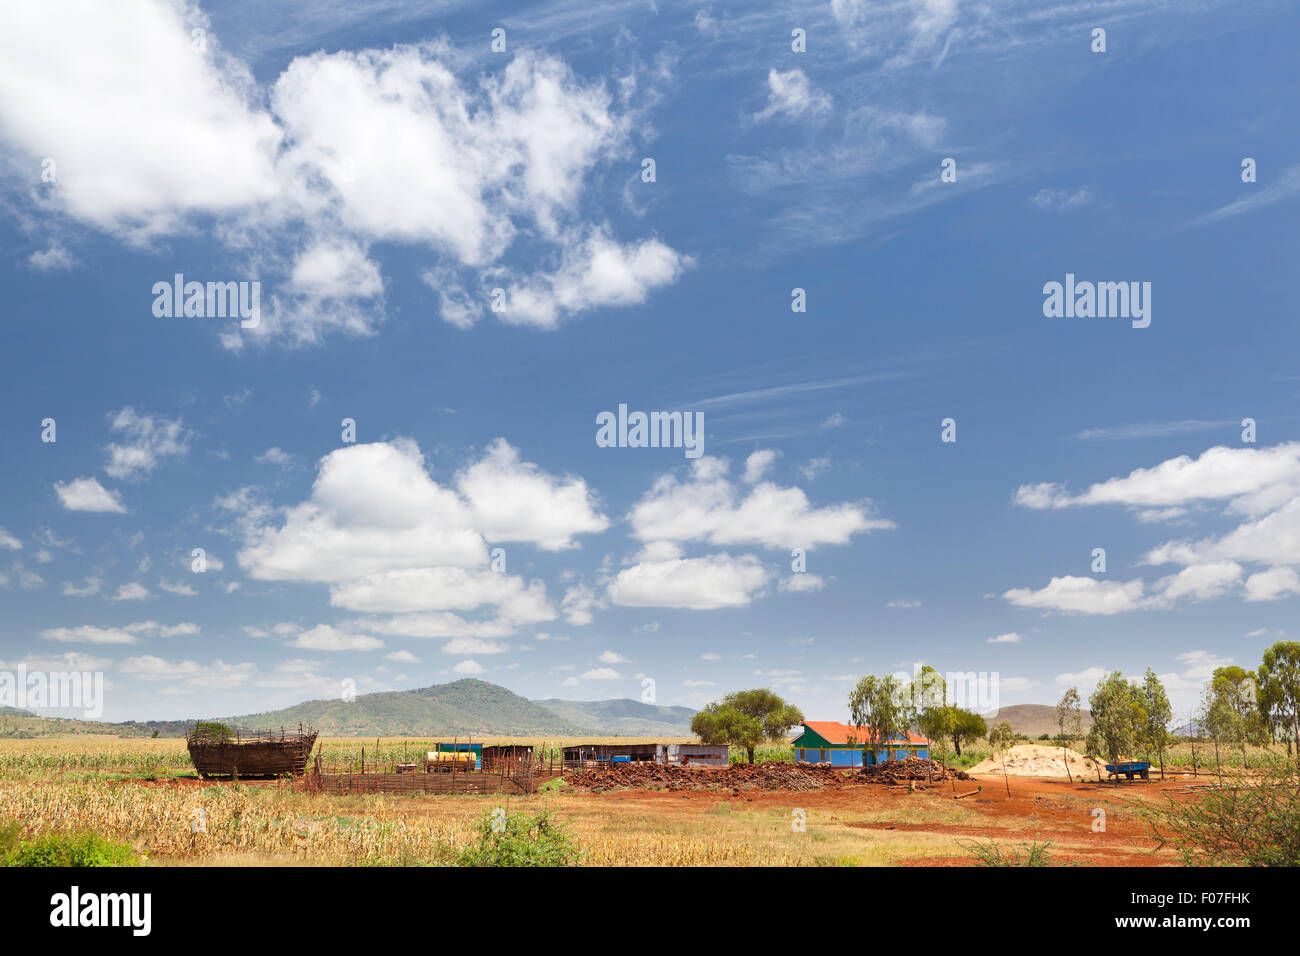 Central Kenyan Farm Landscape on the main road between Mombasa and Nairobi, Kenya. Stock Photo